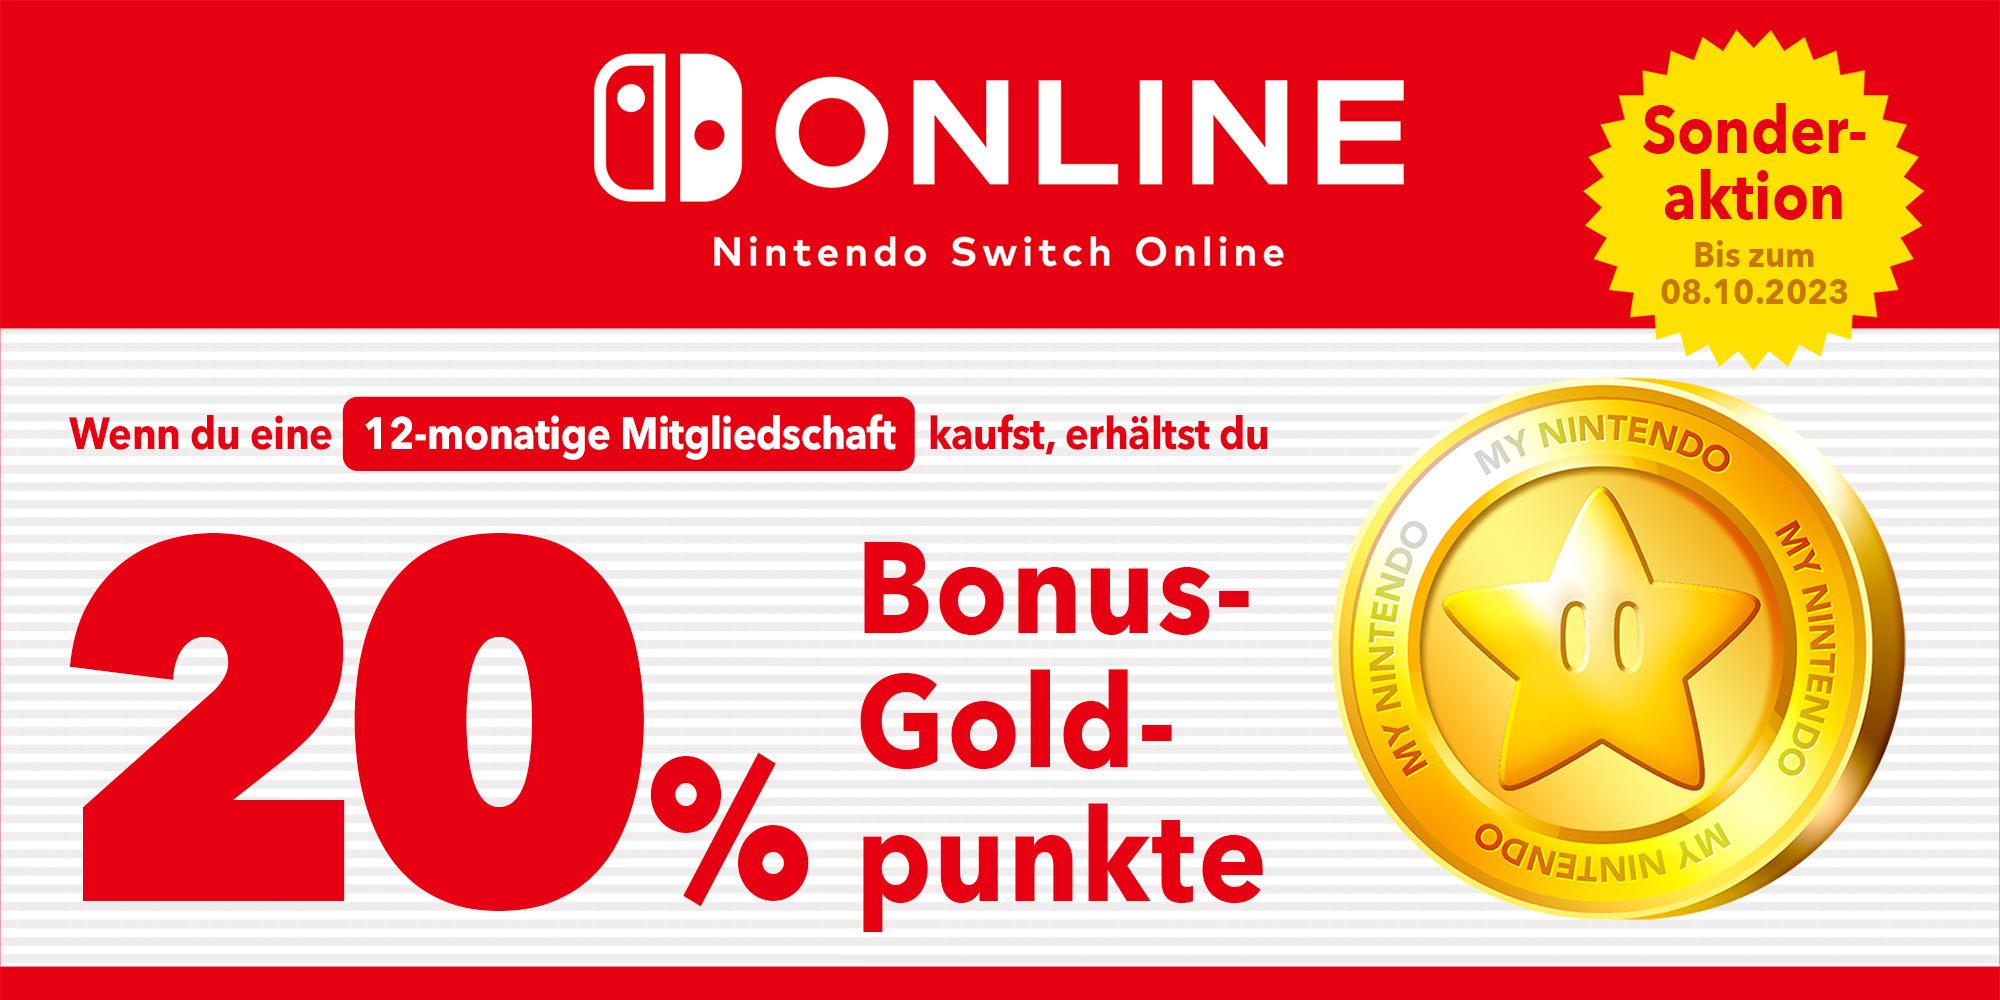 Sonderaktion: Du kannst bis zu 14 € in Goldpunkten mit einer 12-monatigen Mitgliedschaft bei Nintendo Switch Online erhalten!